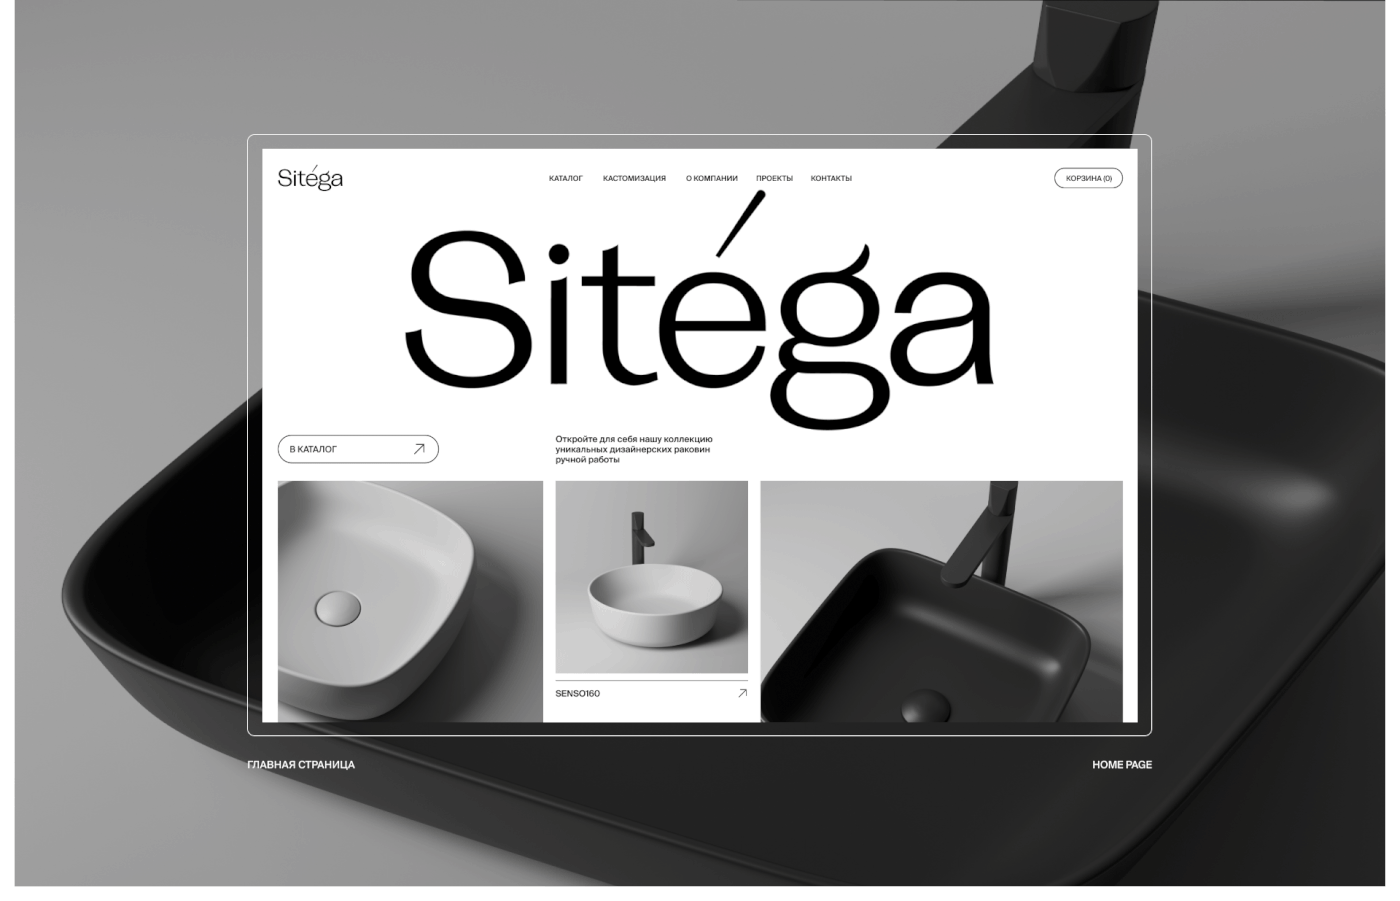 sinks Ecommerce Website handmade design designer brand identity